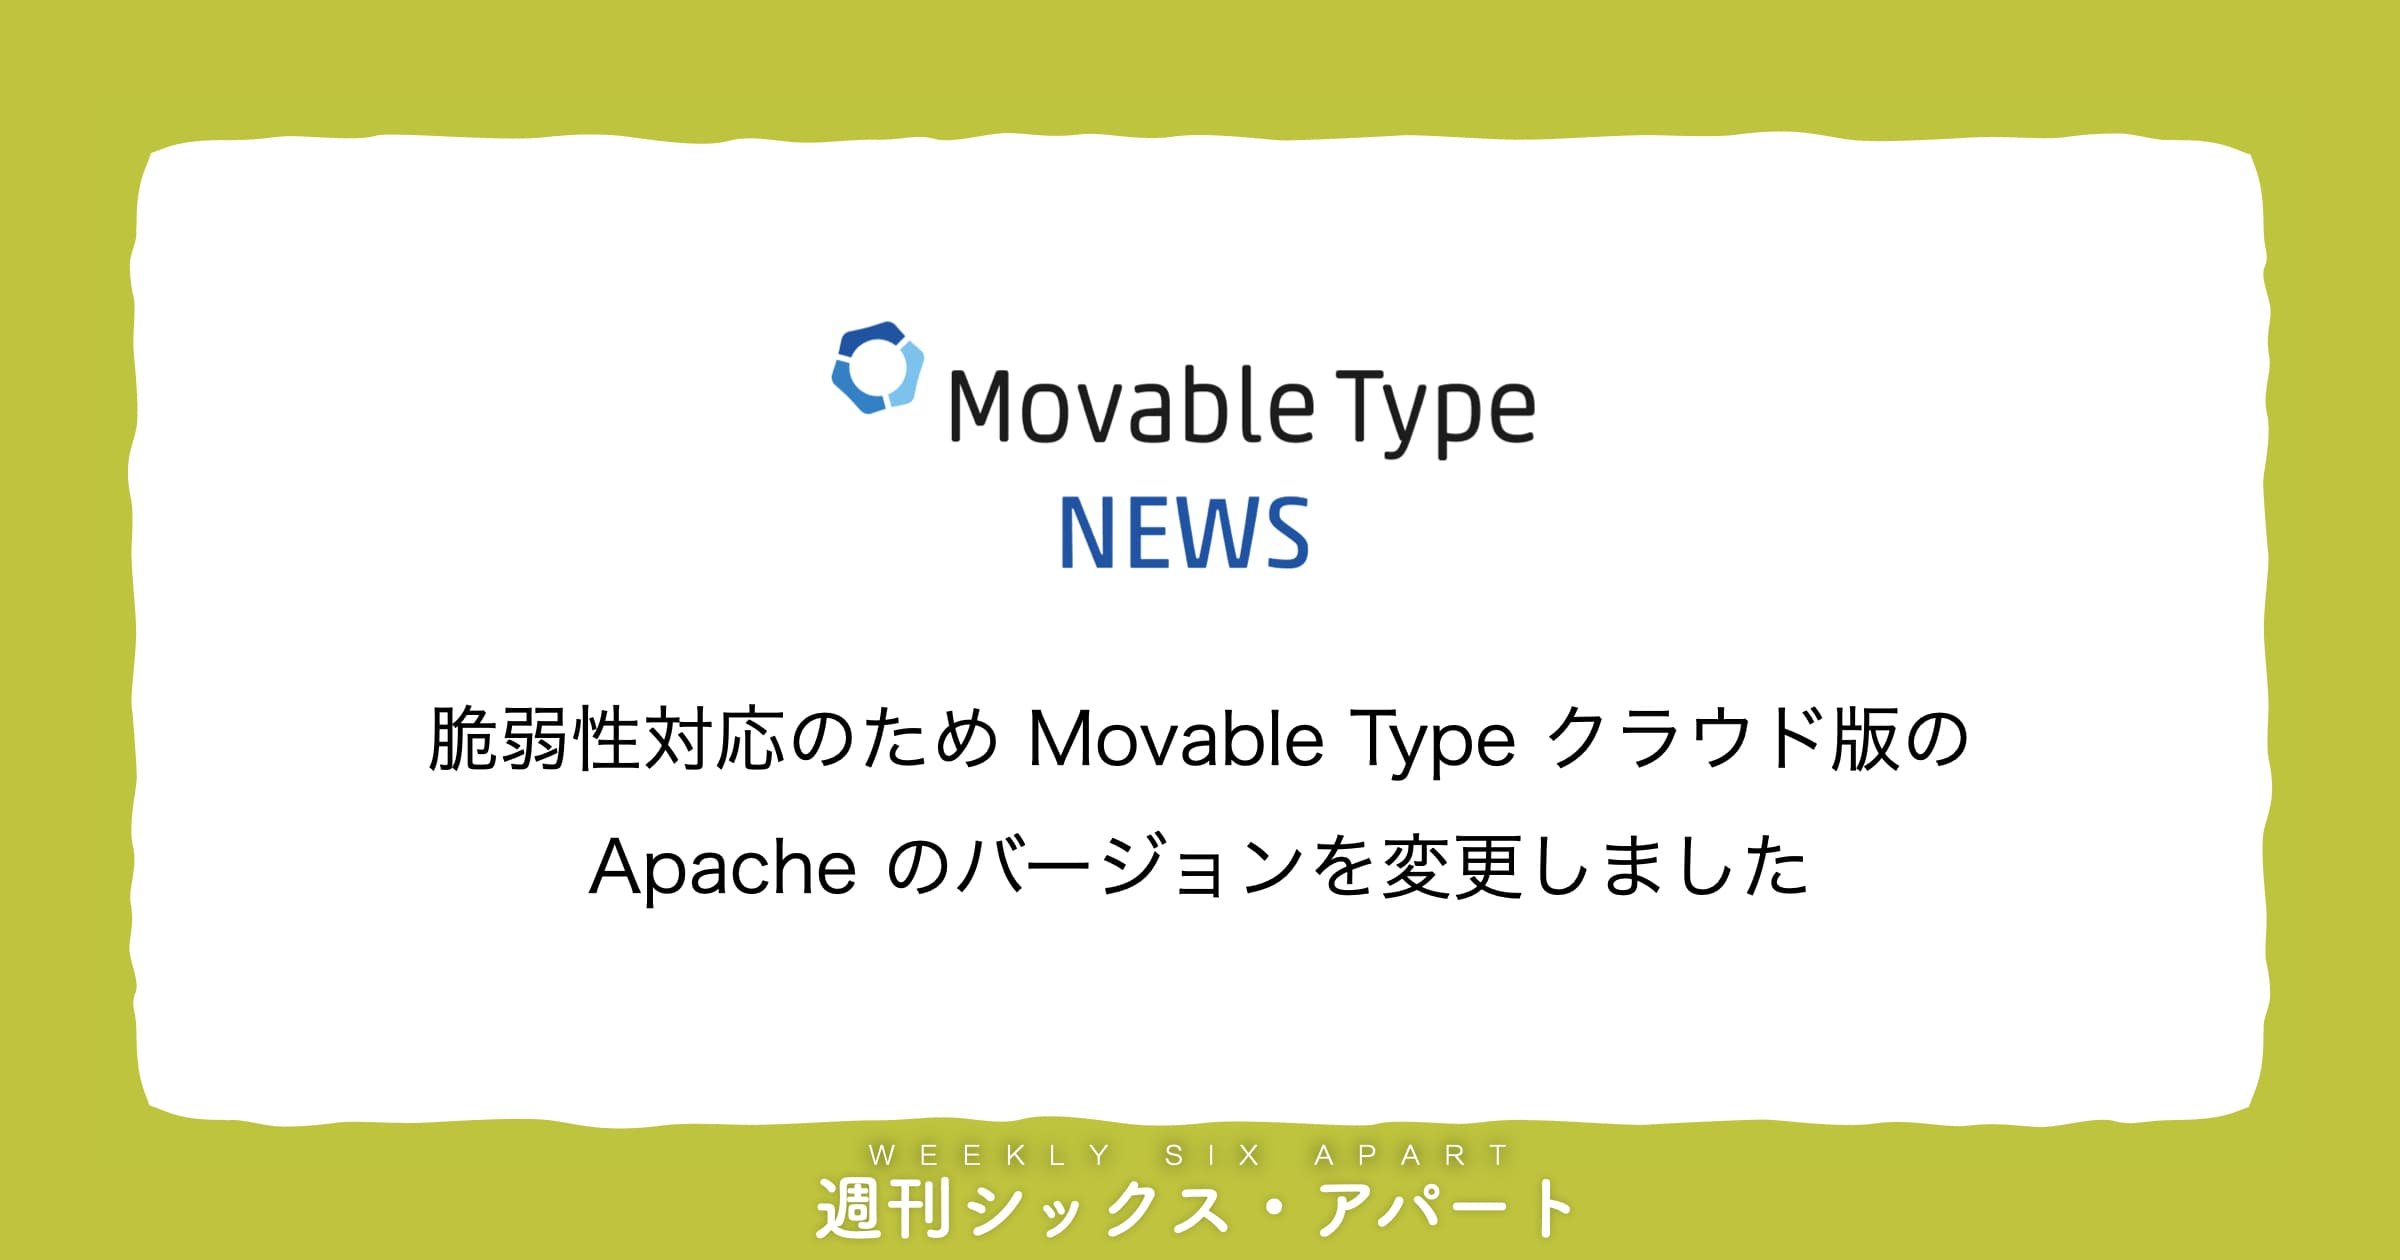 Movable Type クラウド版の Apache のバージョンを変更しました #週刊SA